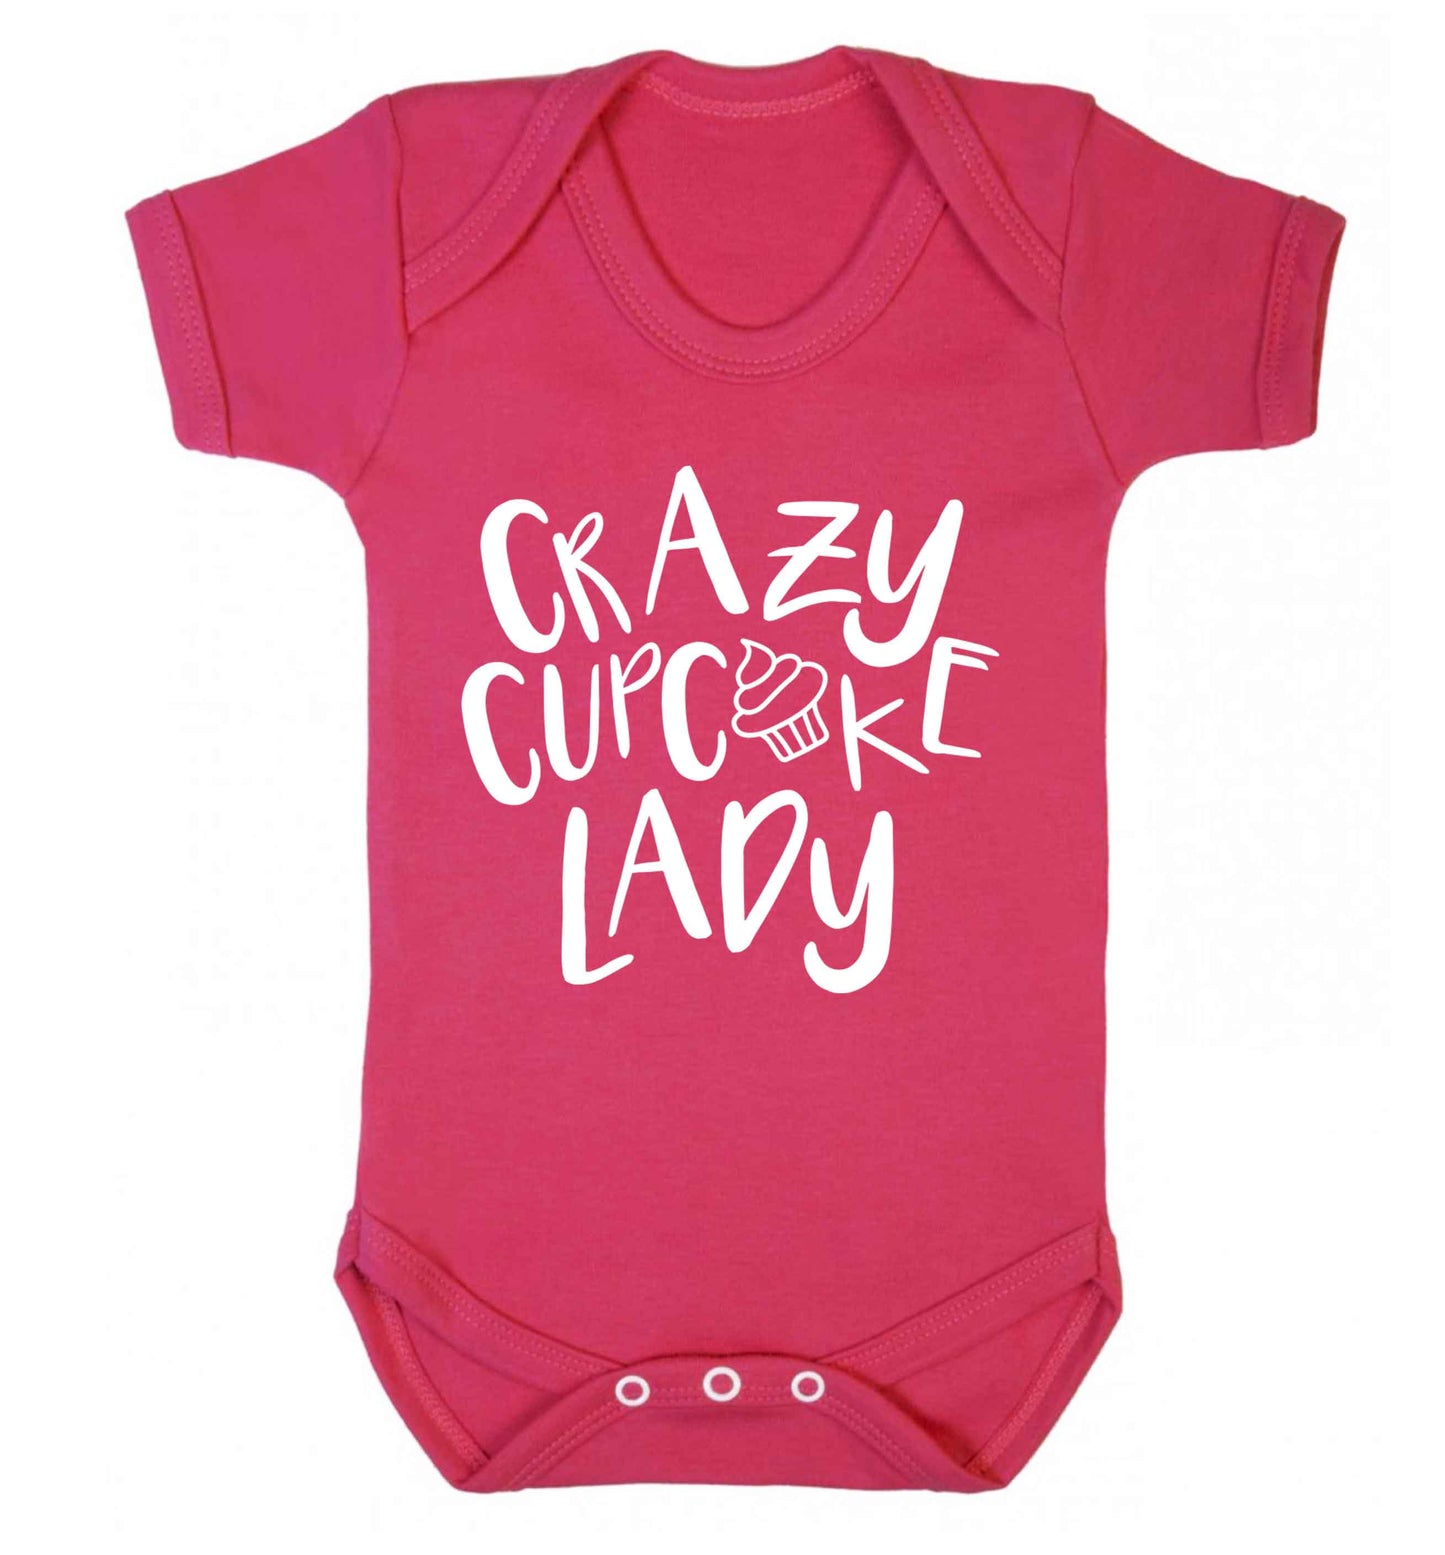 Crazy cupcake lady Baby Vest dark pink 18-24 months